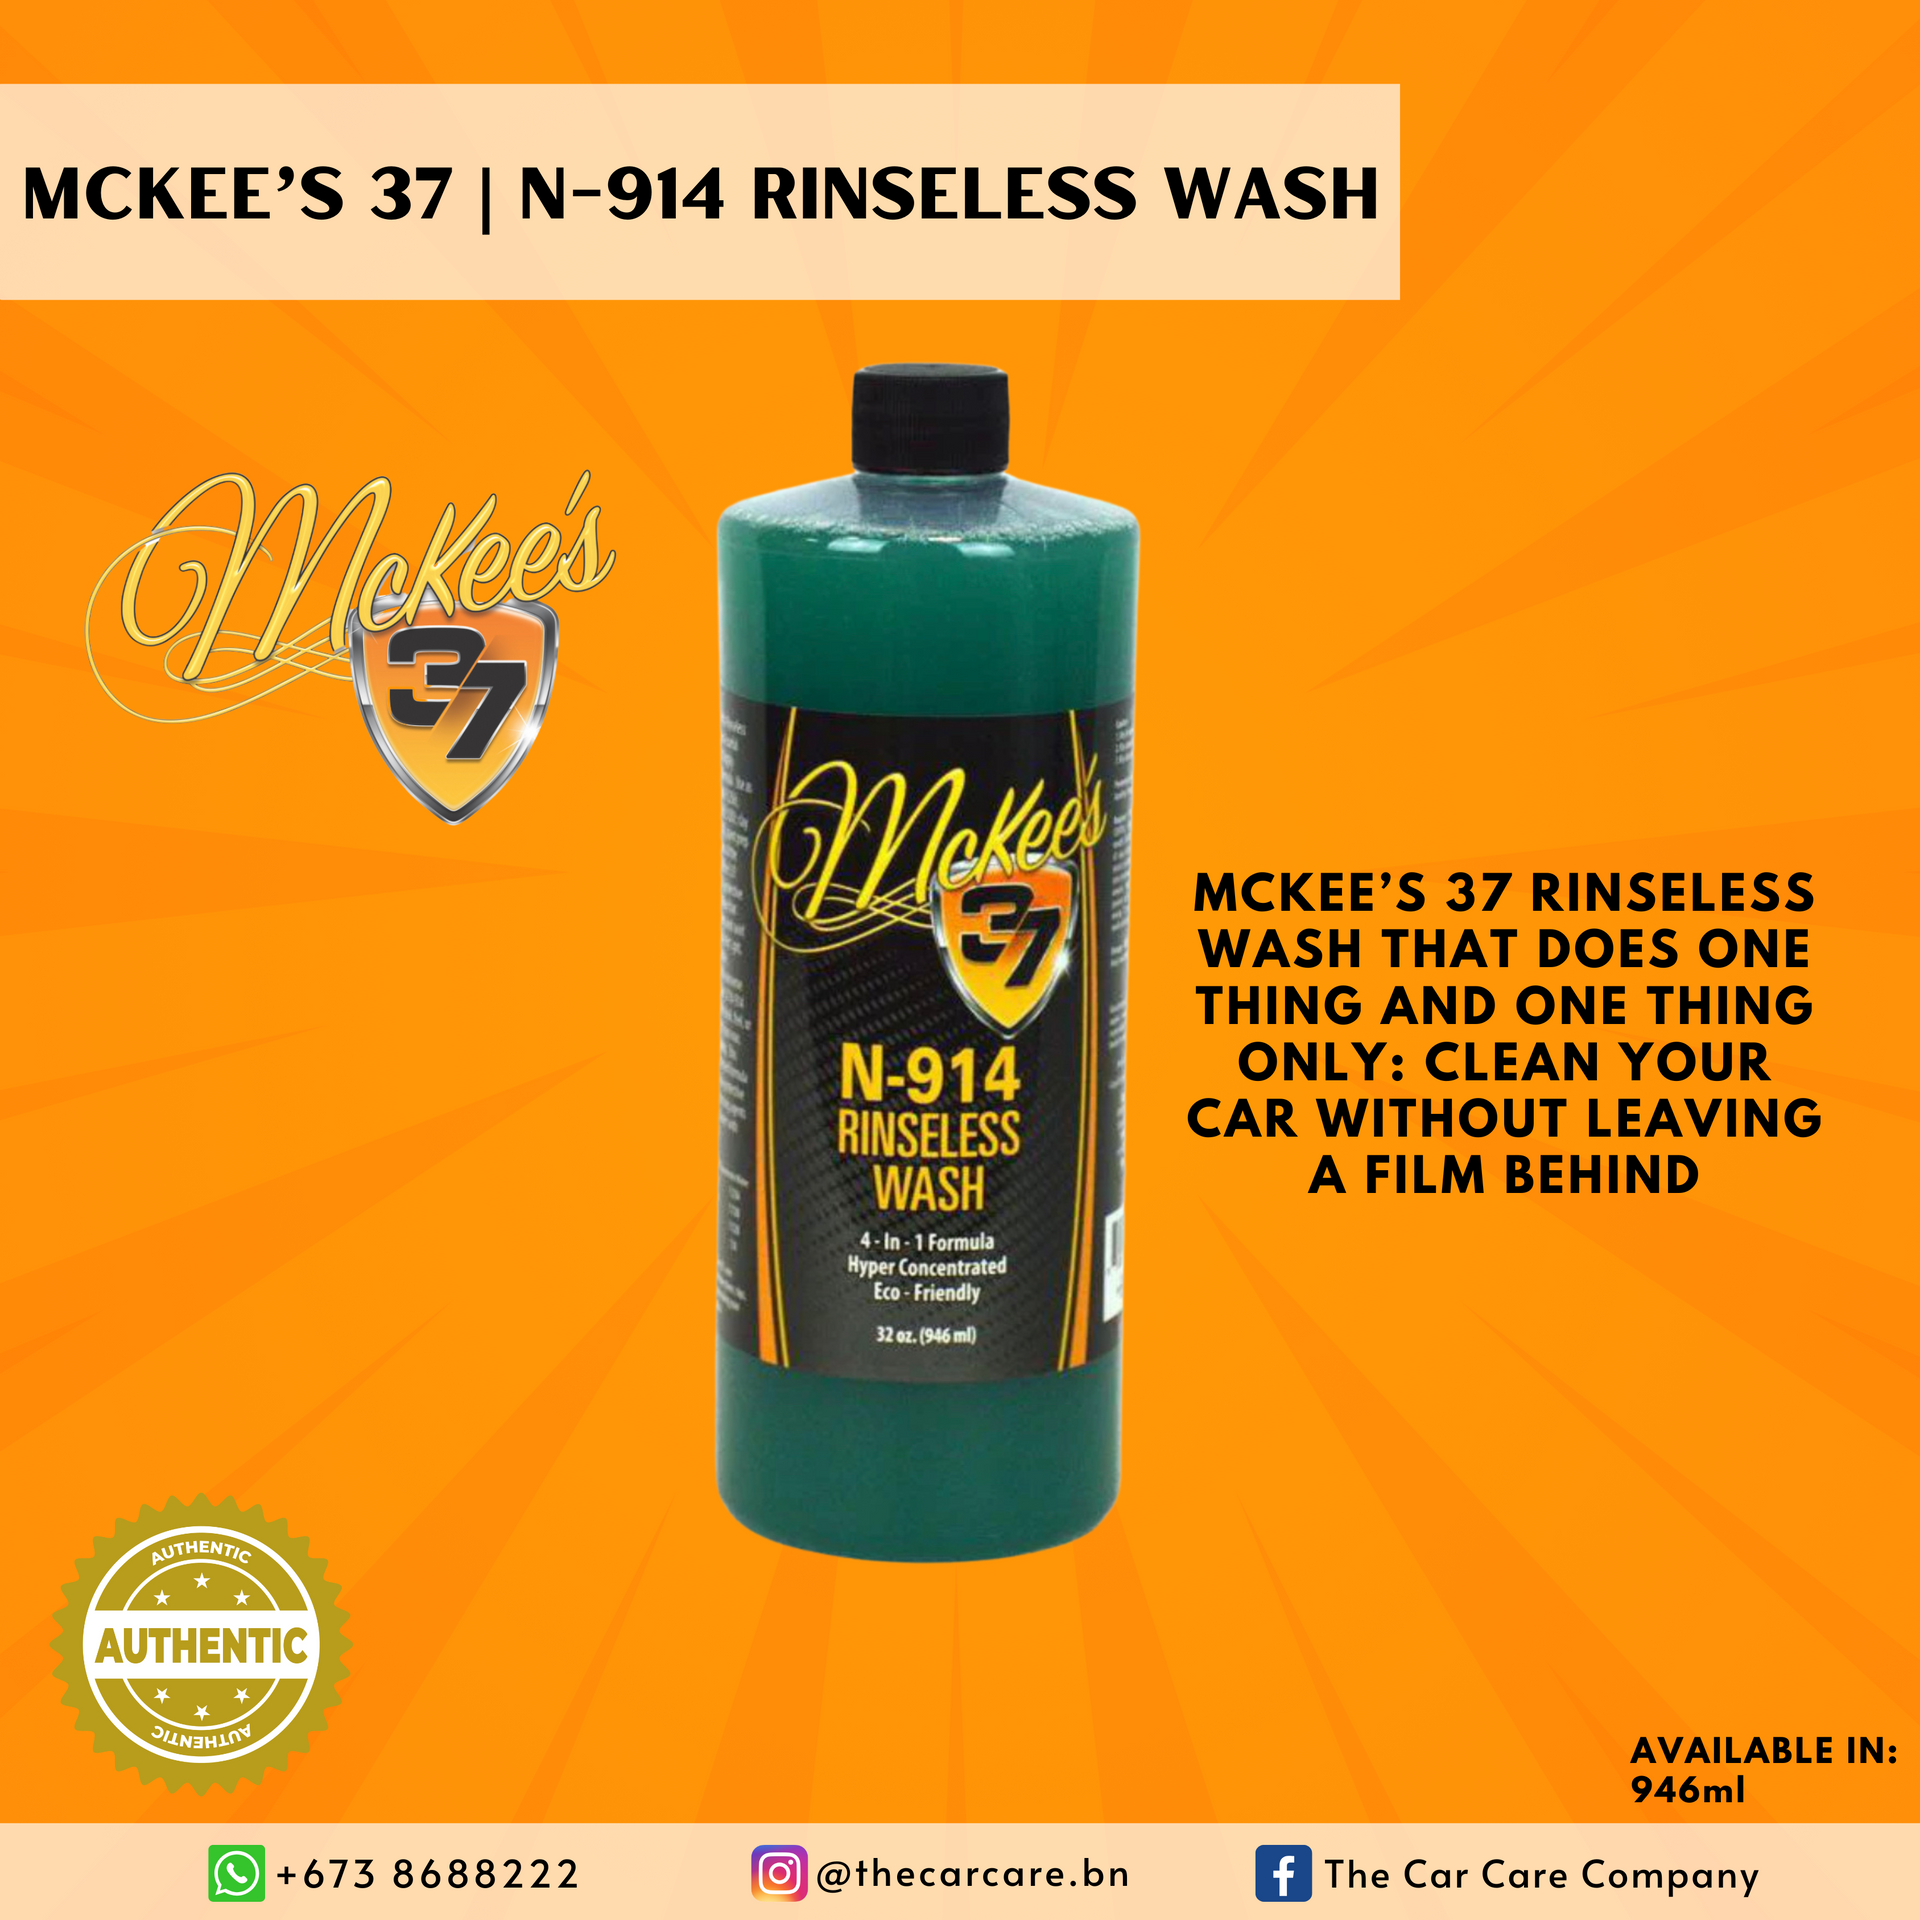 McKee's 37 | N-914 Rinseless Wash 32oz